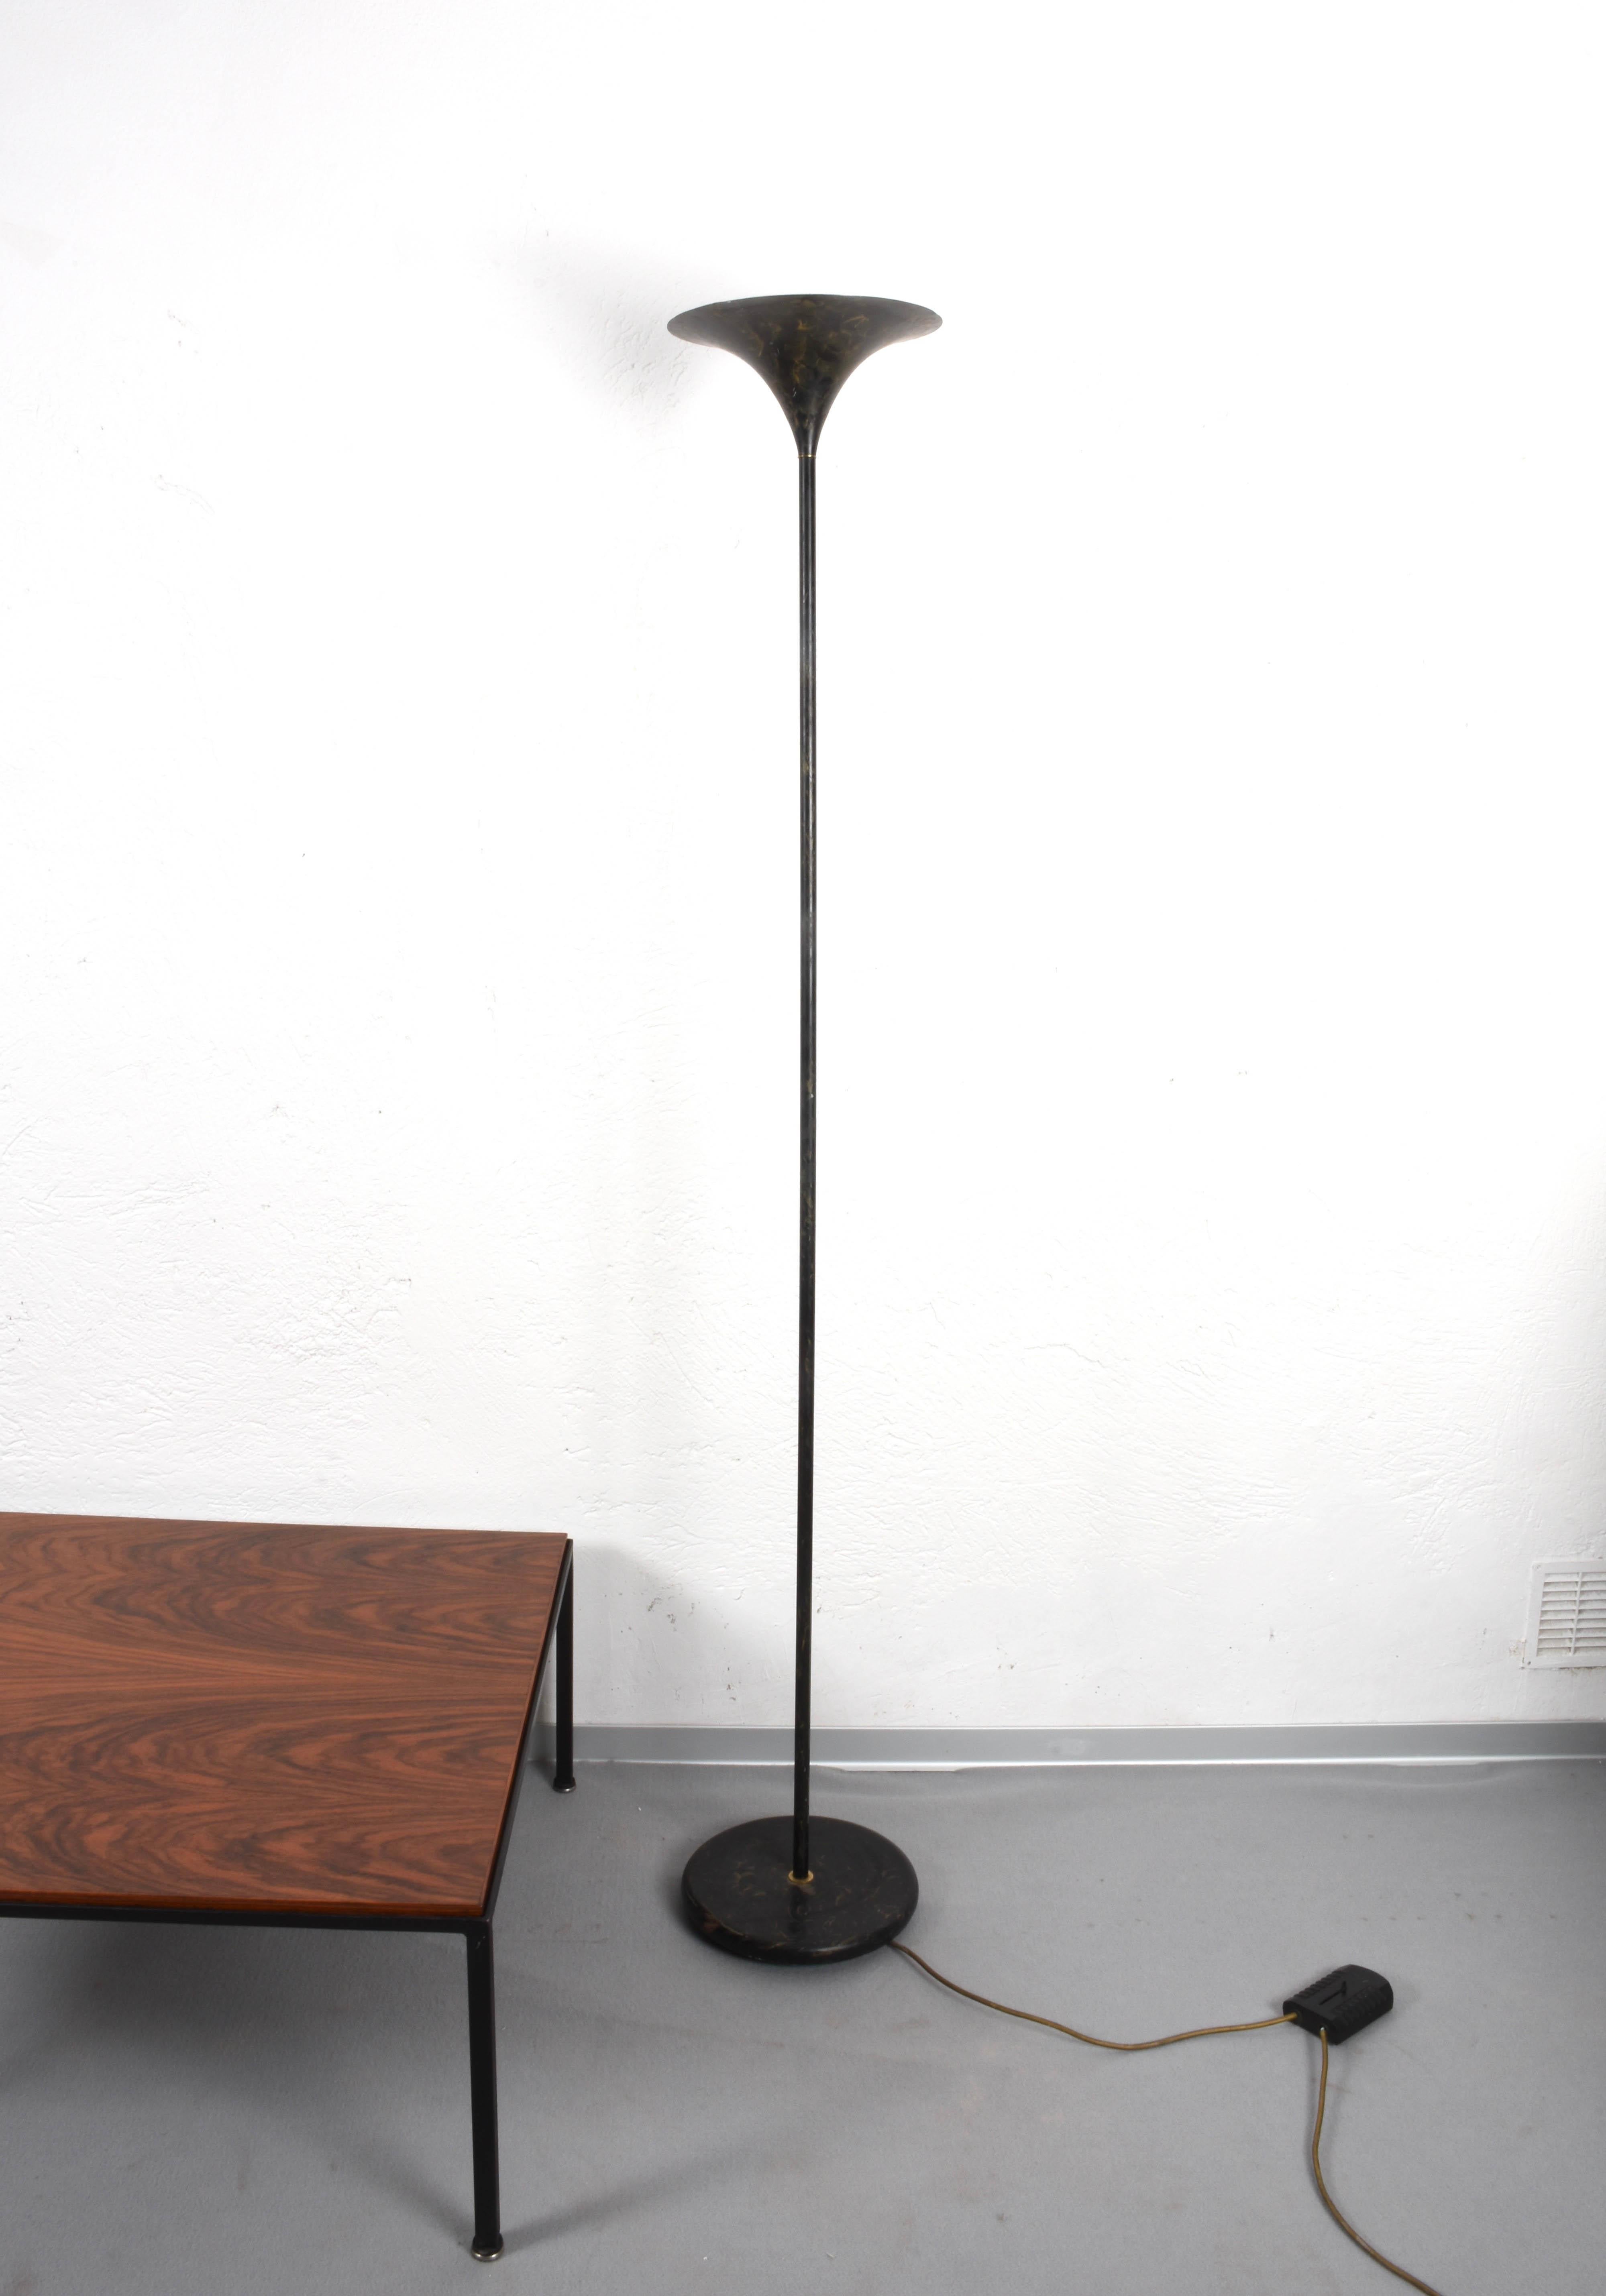 Late 20th Century Black Tulip Floor Lamp, Aluminum, Gold decorated, Midcentury Italy, 1970s